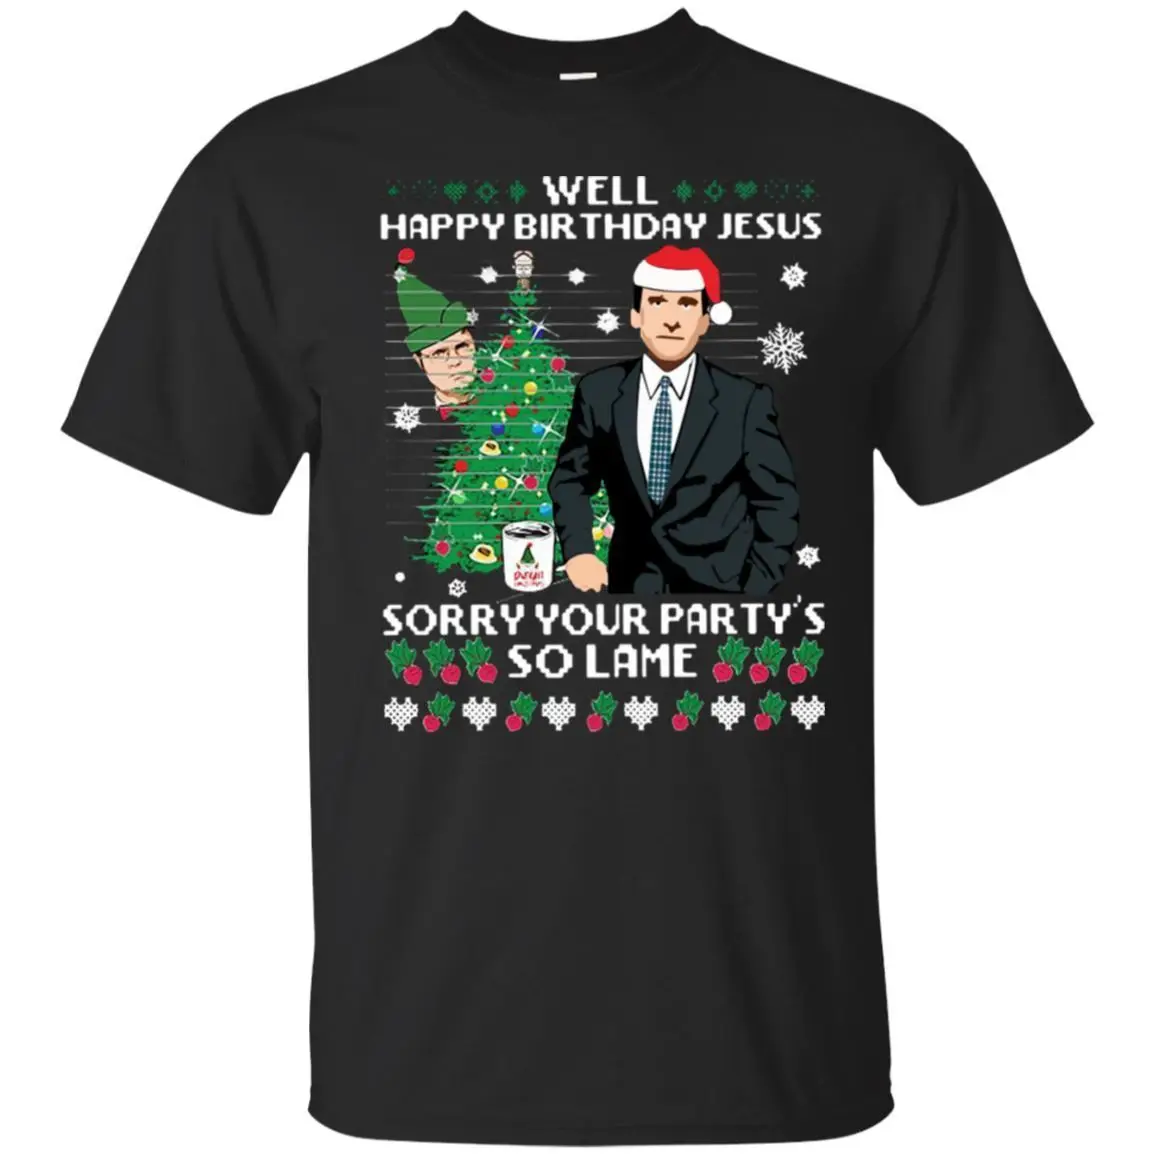 Майкл Скотт Счастливого Рождества футболка хорошо с днем рождения Иисуса классная футболка Повседневная Прайд Футболка Мужская модная футболка унисекс